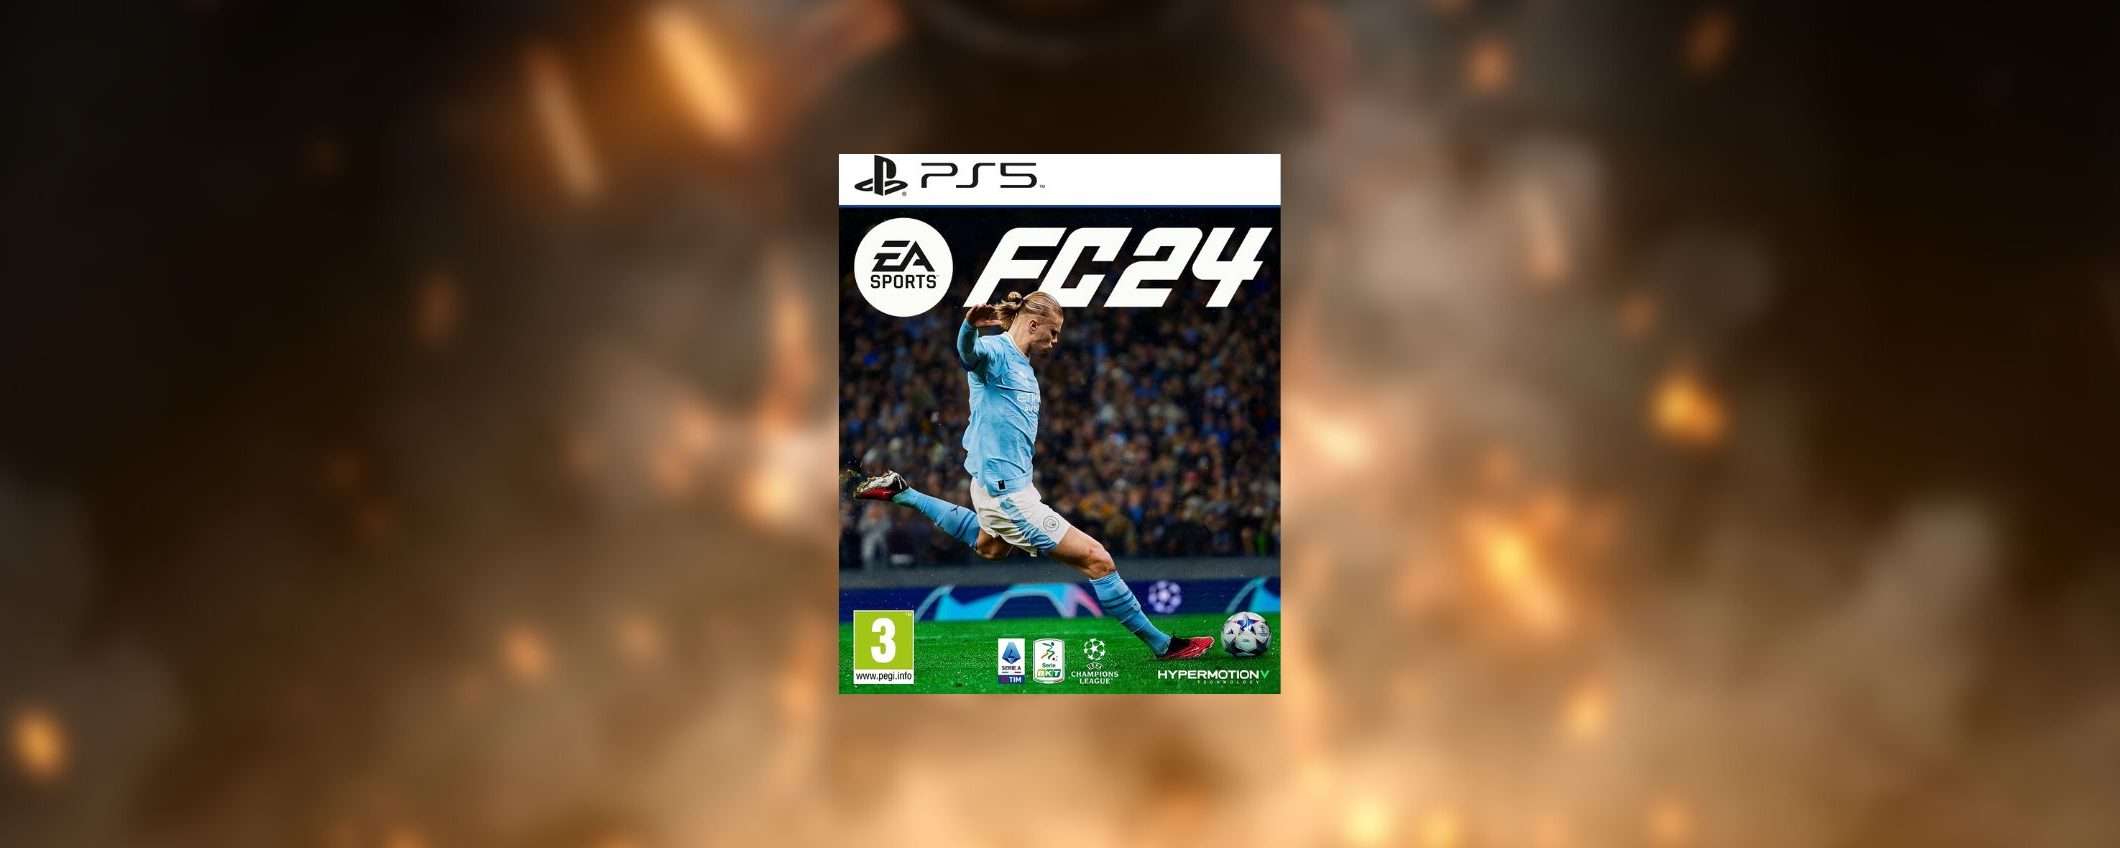 EA Sports FC 24 per PS5 è SUBITO IN OFFERTA su Amazon